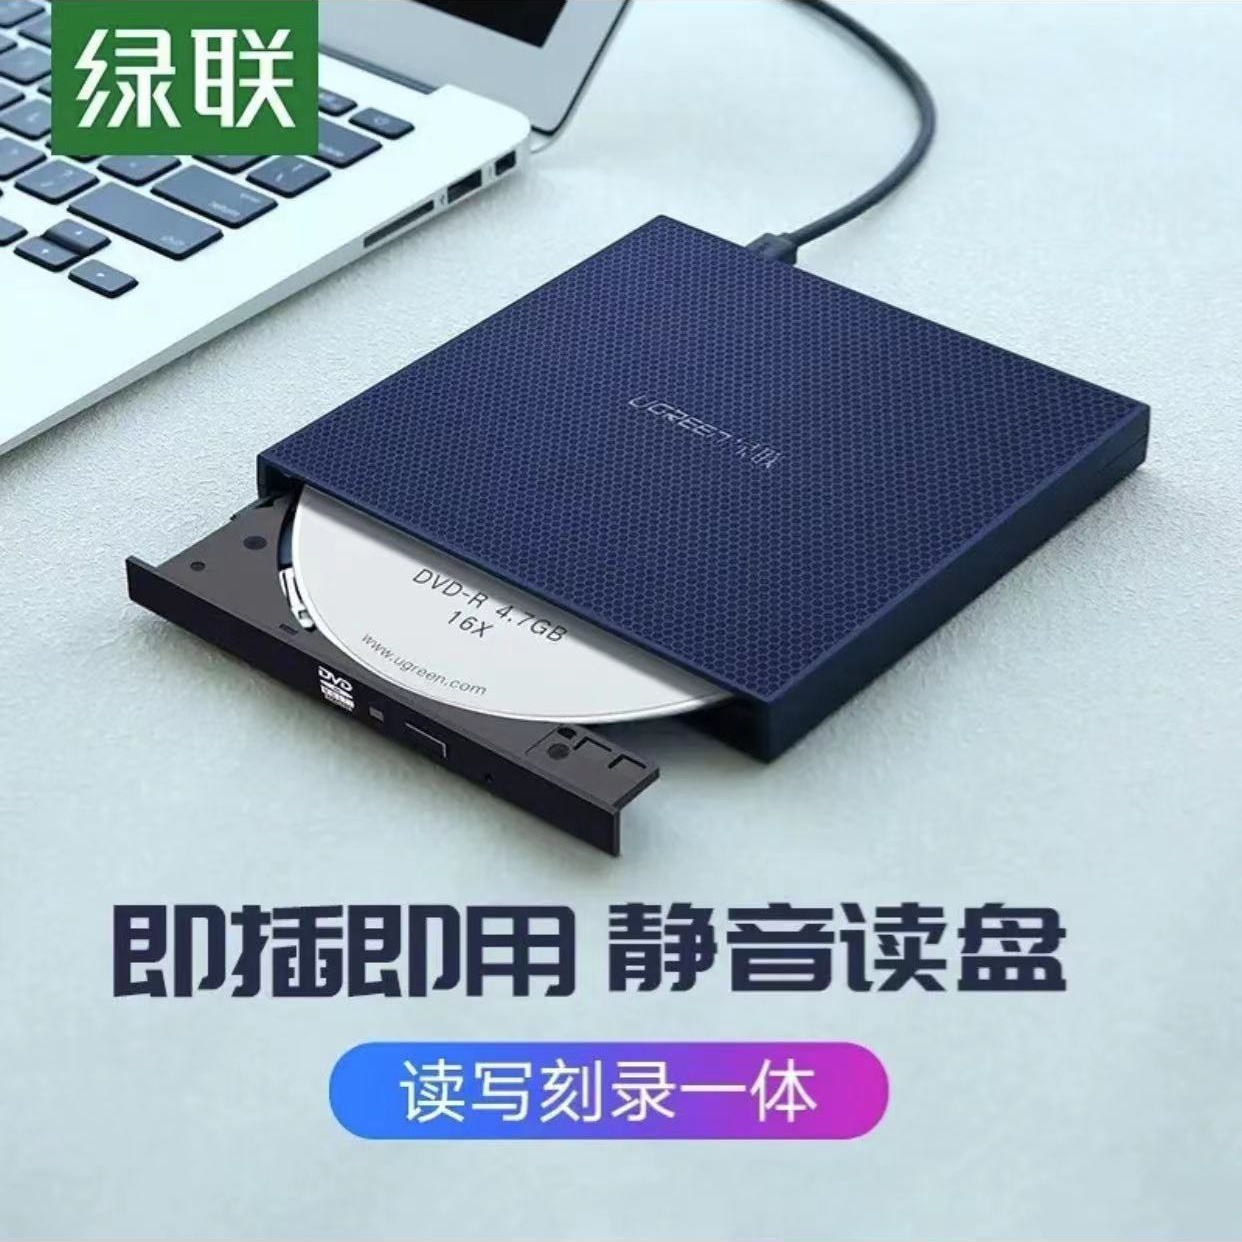 厂家私模高清4K USB高速外置光驱 蓝光光碟刻录机托盘蓝光刻录机-阿里巴巴